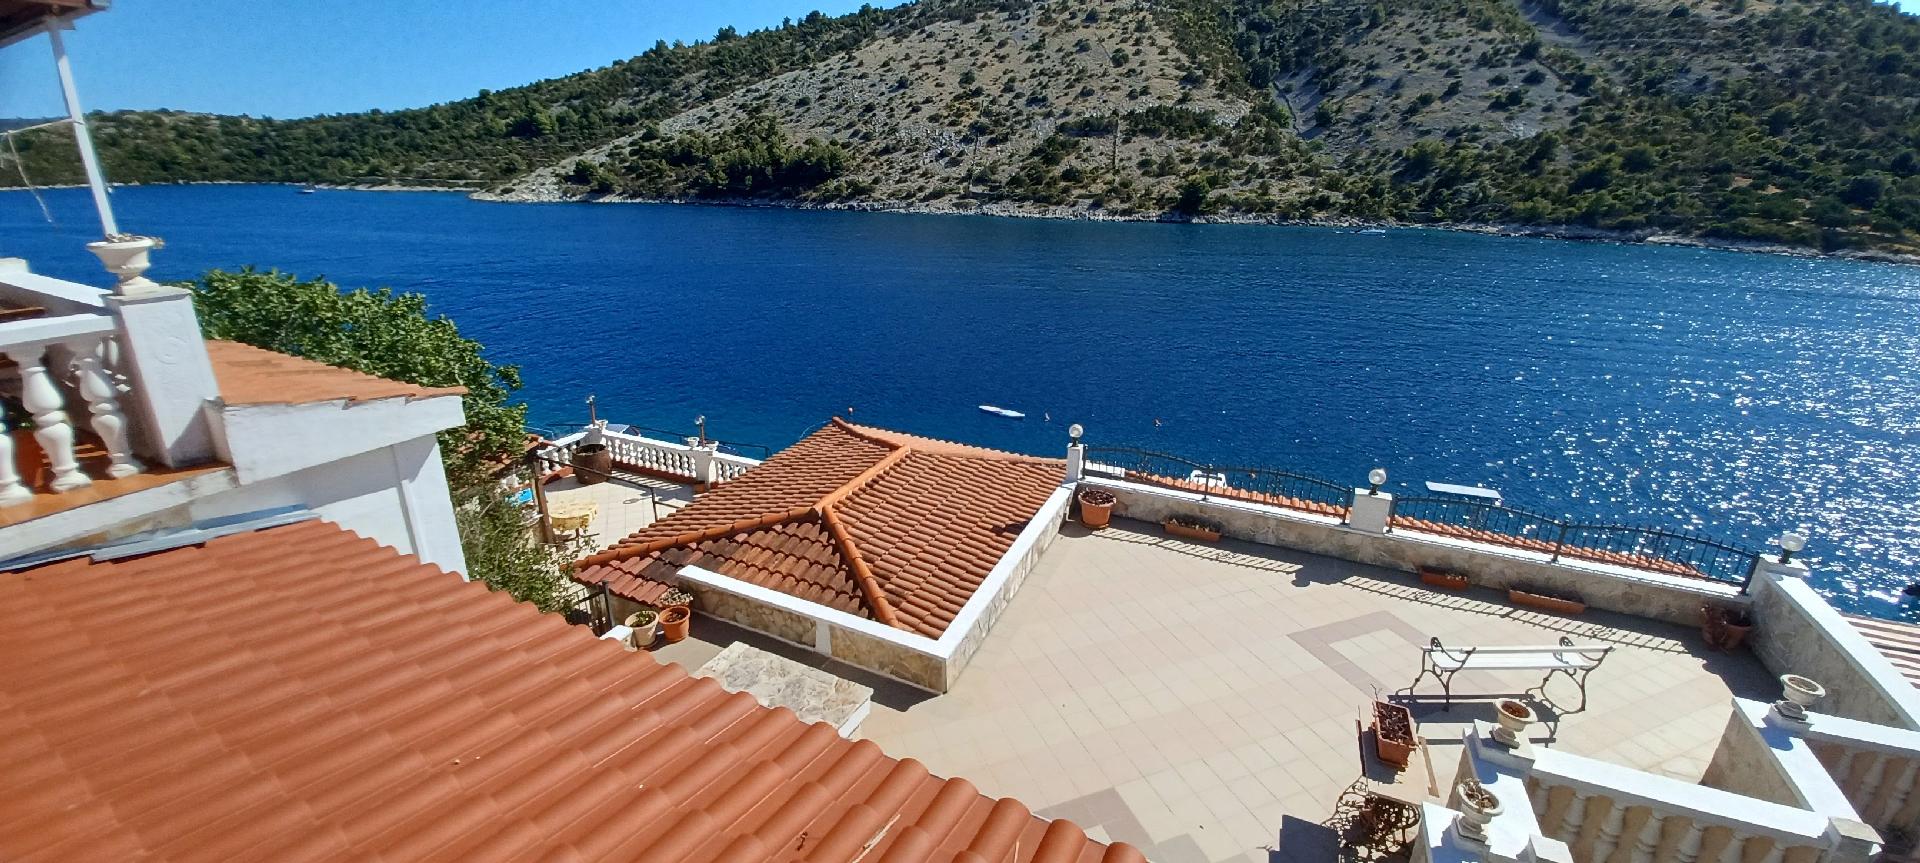 Ferienwohnung mit Balkon in der zweiten Etage Ferienhaus in Dalmatien